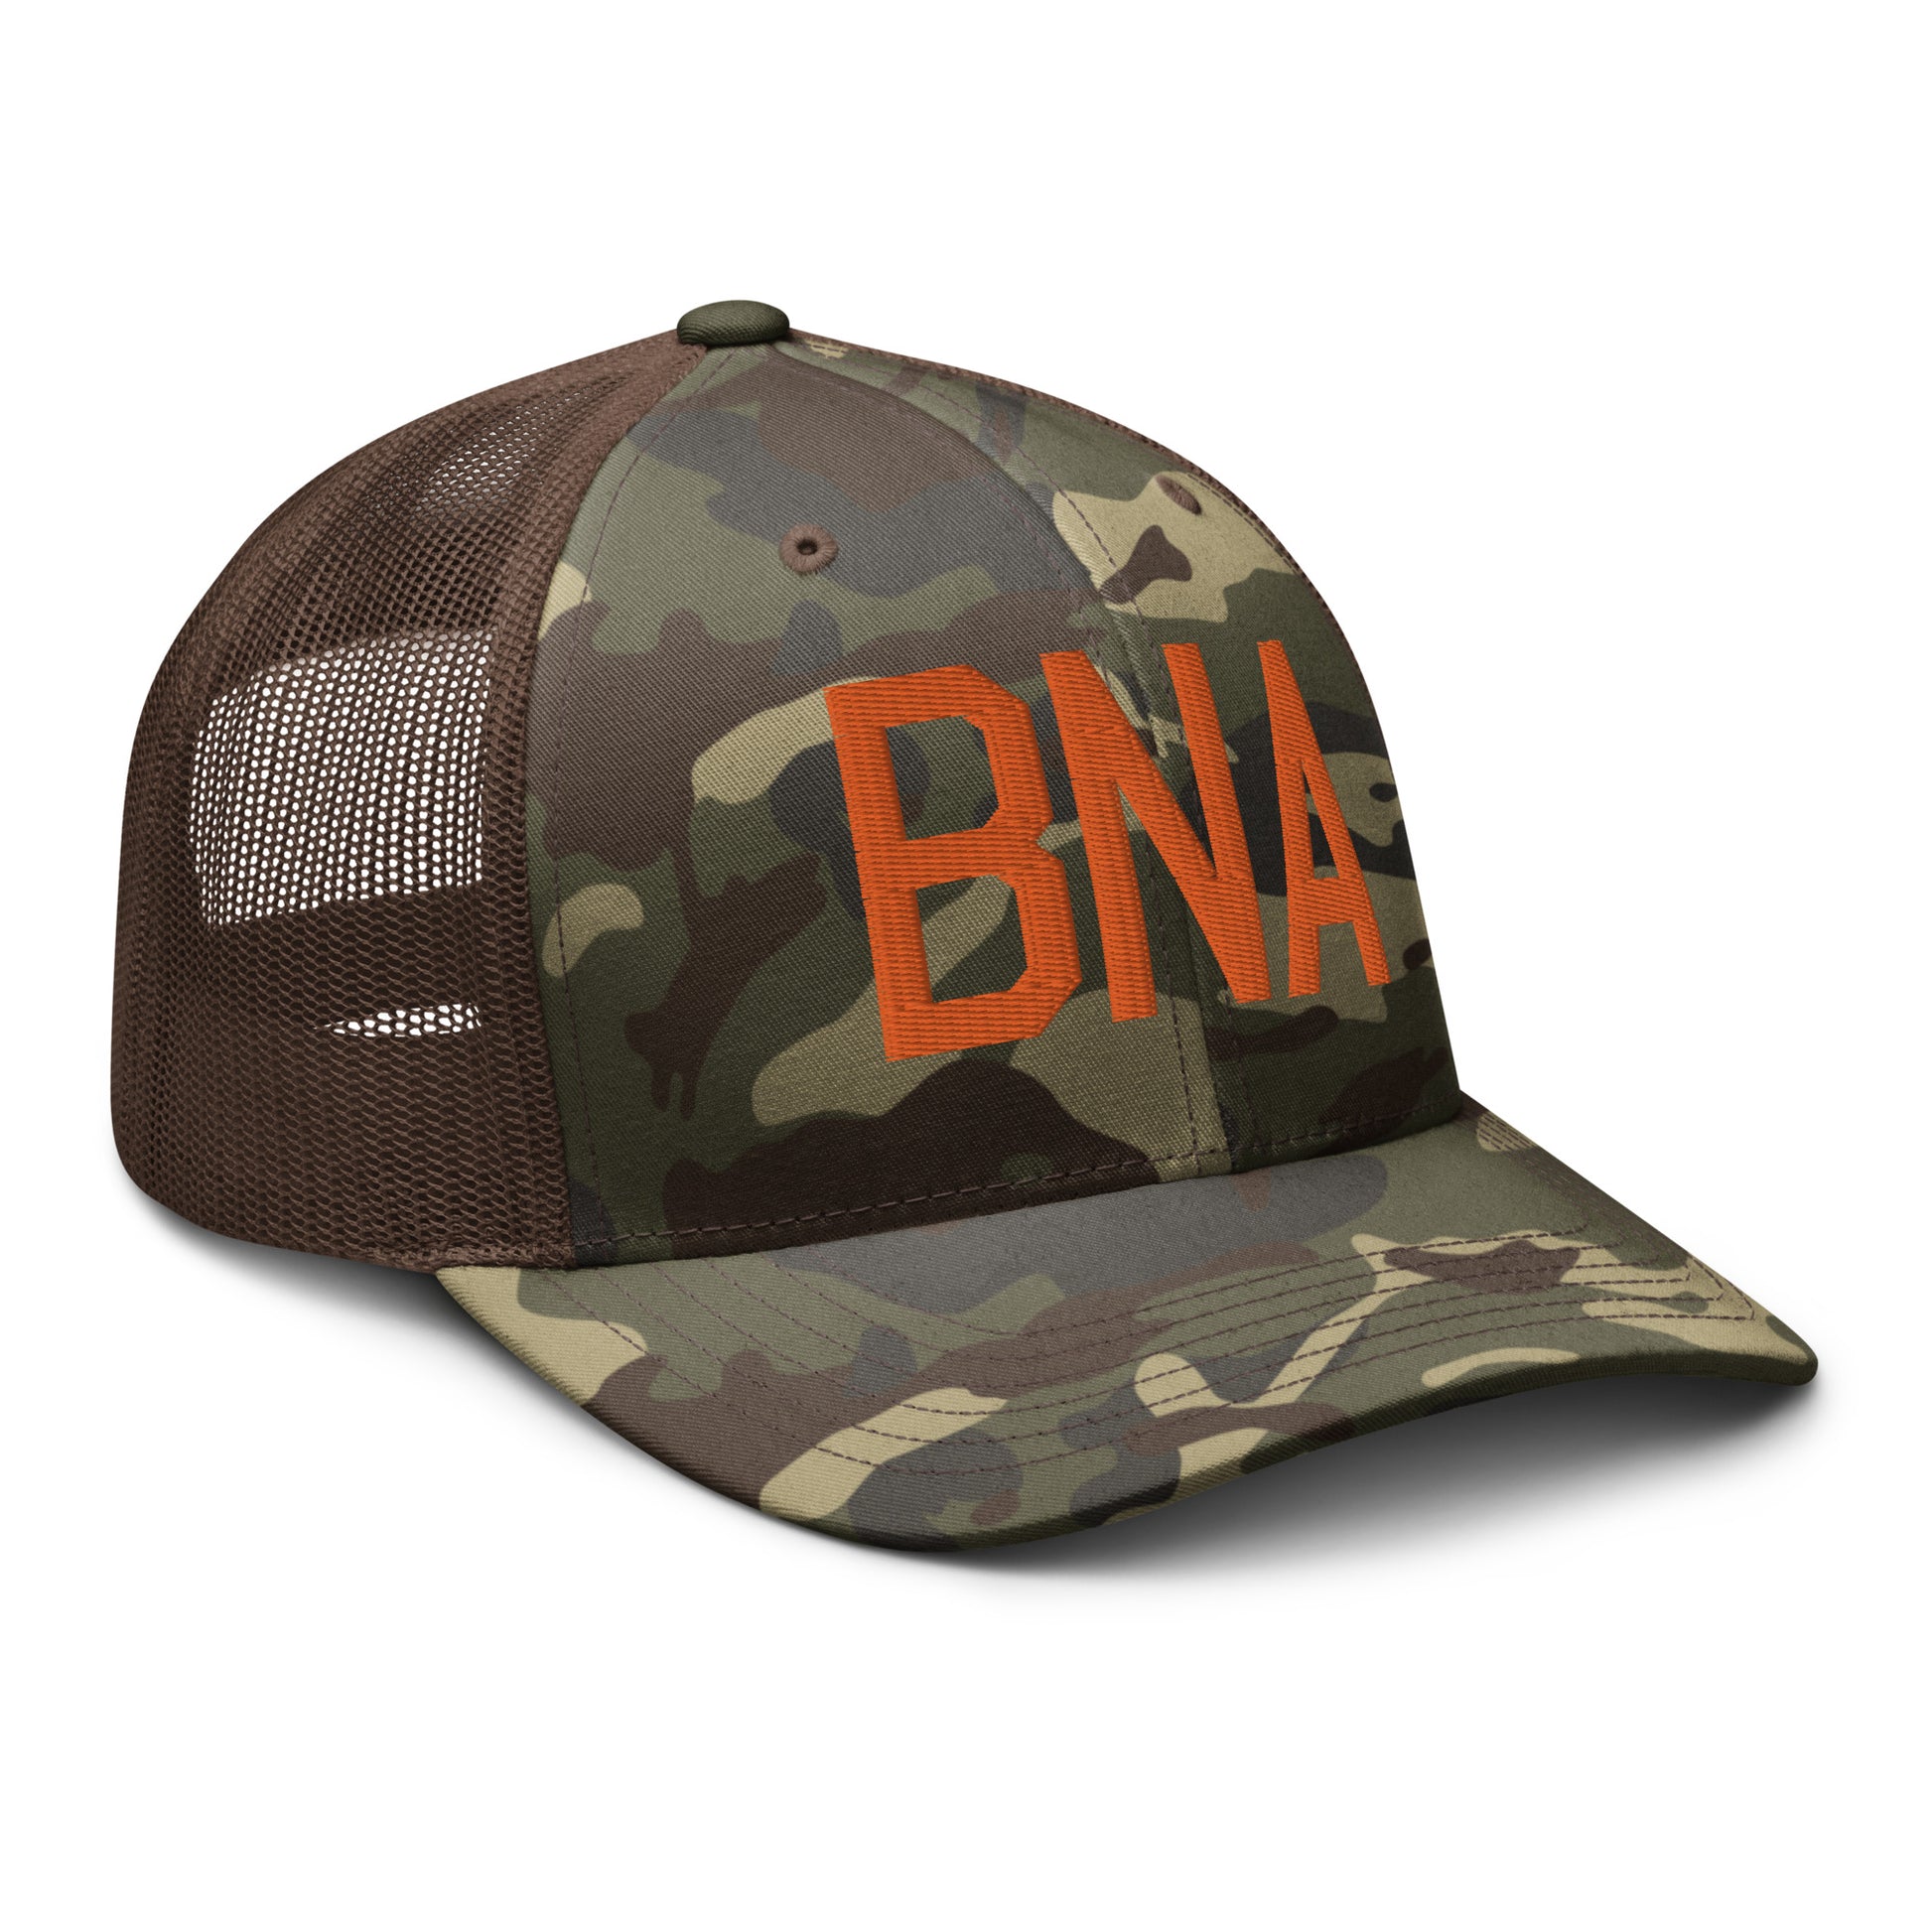 Airport Code Camouflage Trucker Hat - Orange • BNA Nashville • YHM Designs - Image 16